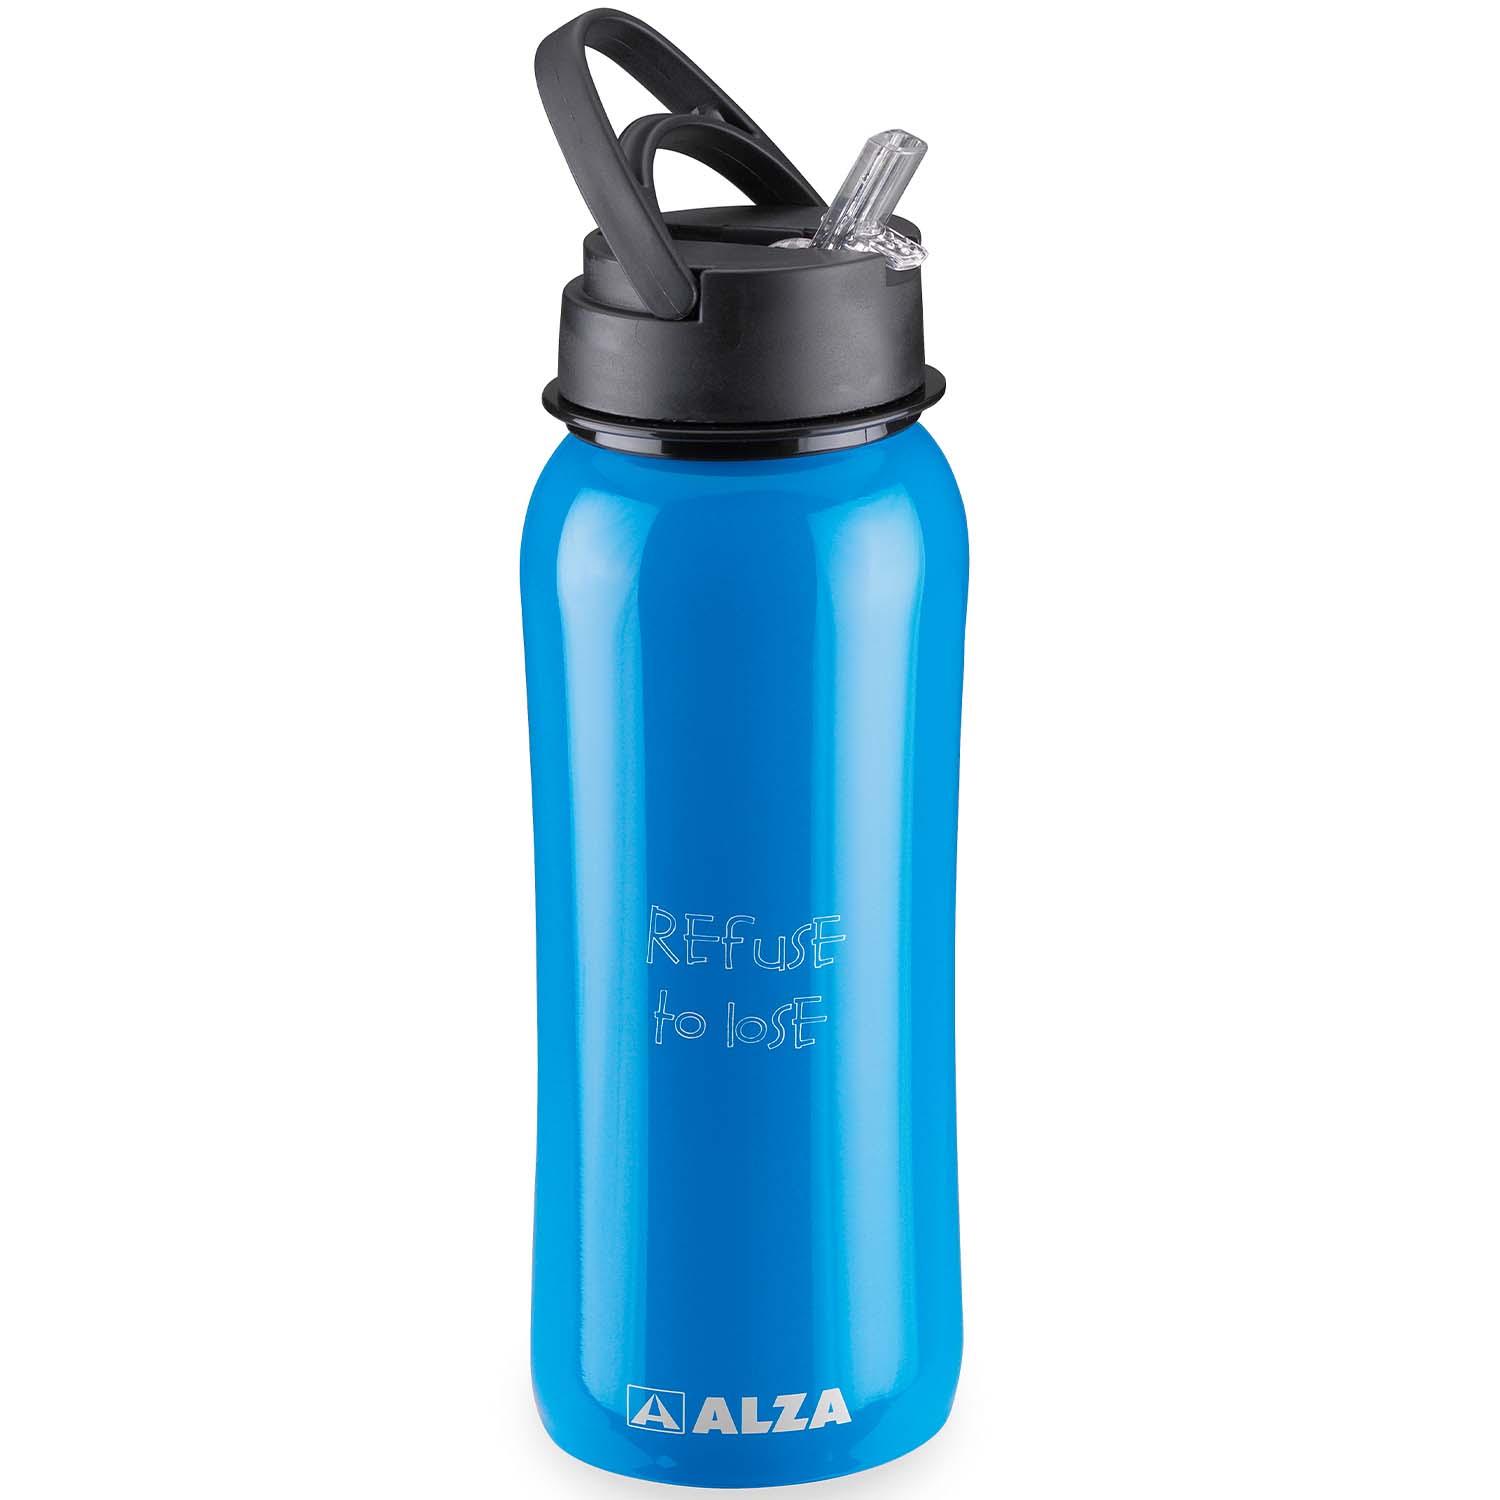 Alza - Alza ® Tokio botella de agua deportiva reutilizable, 750 ml, fabricada en acero inoxidable, muy resistente, libre de BPA, cierre a prueba de fugas, mantiene frescos los liquidos en el interior